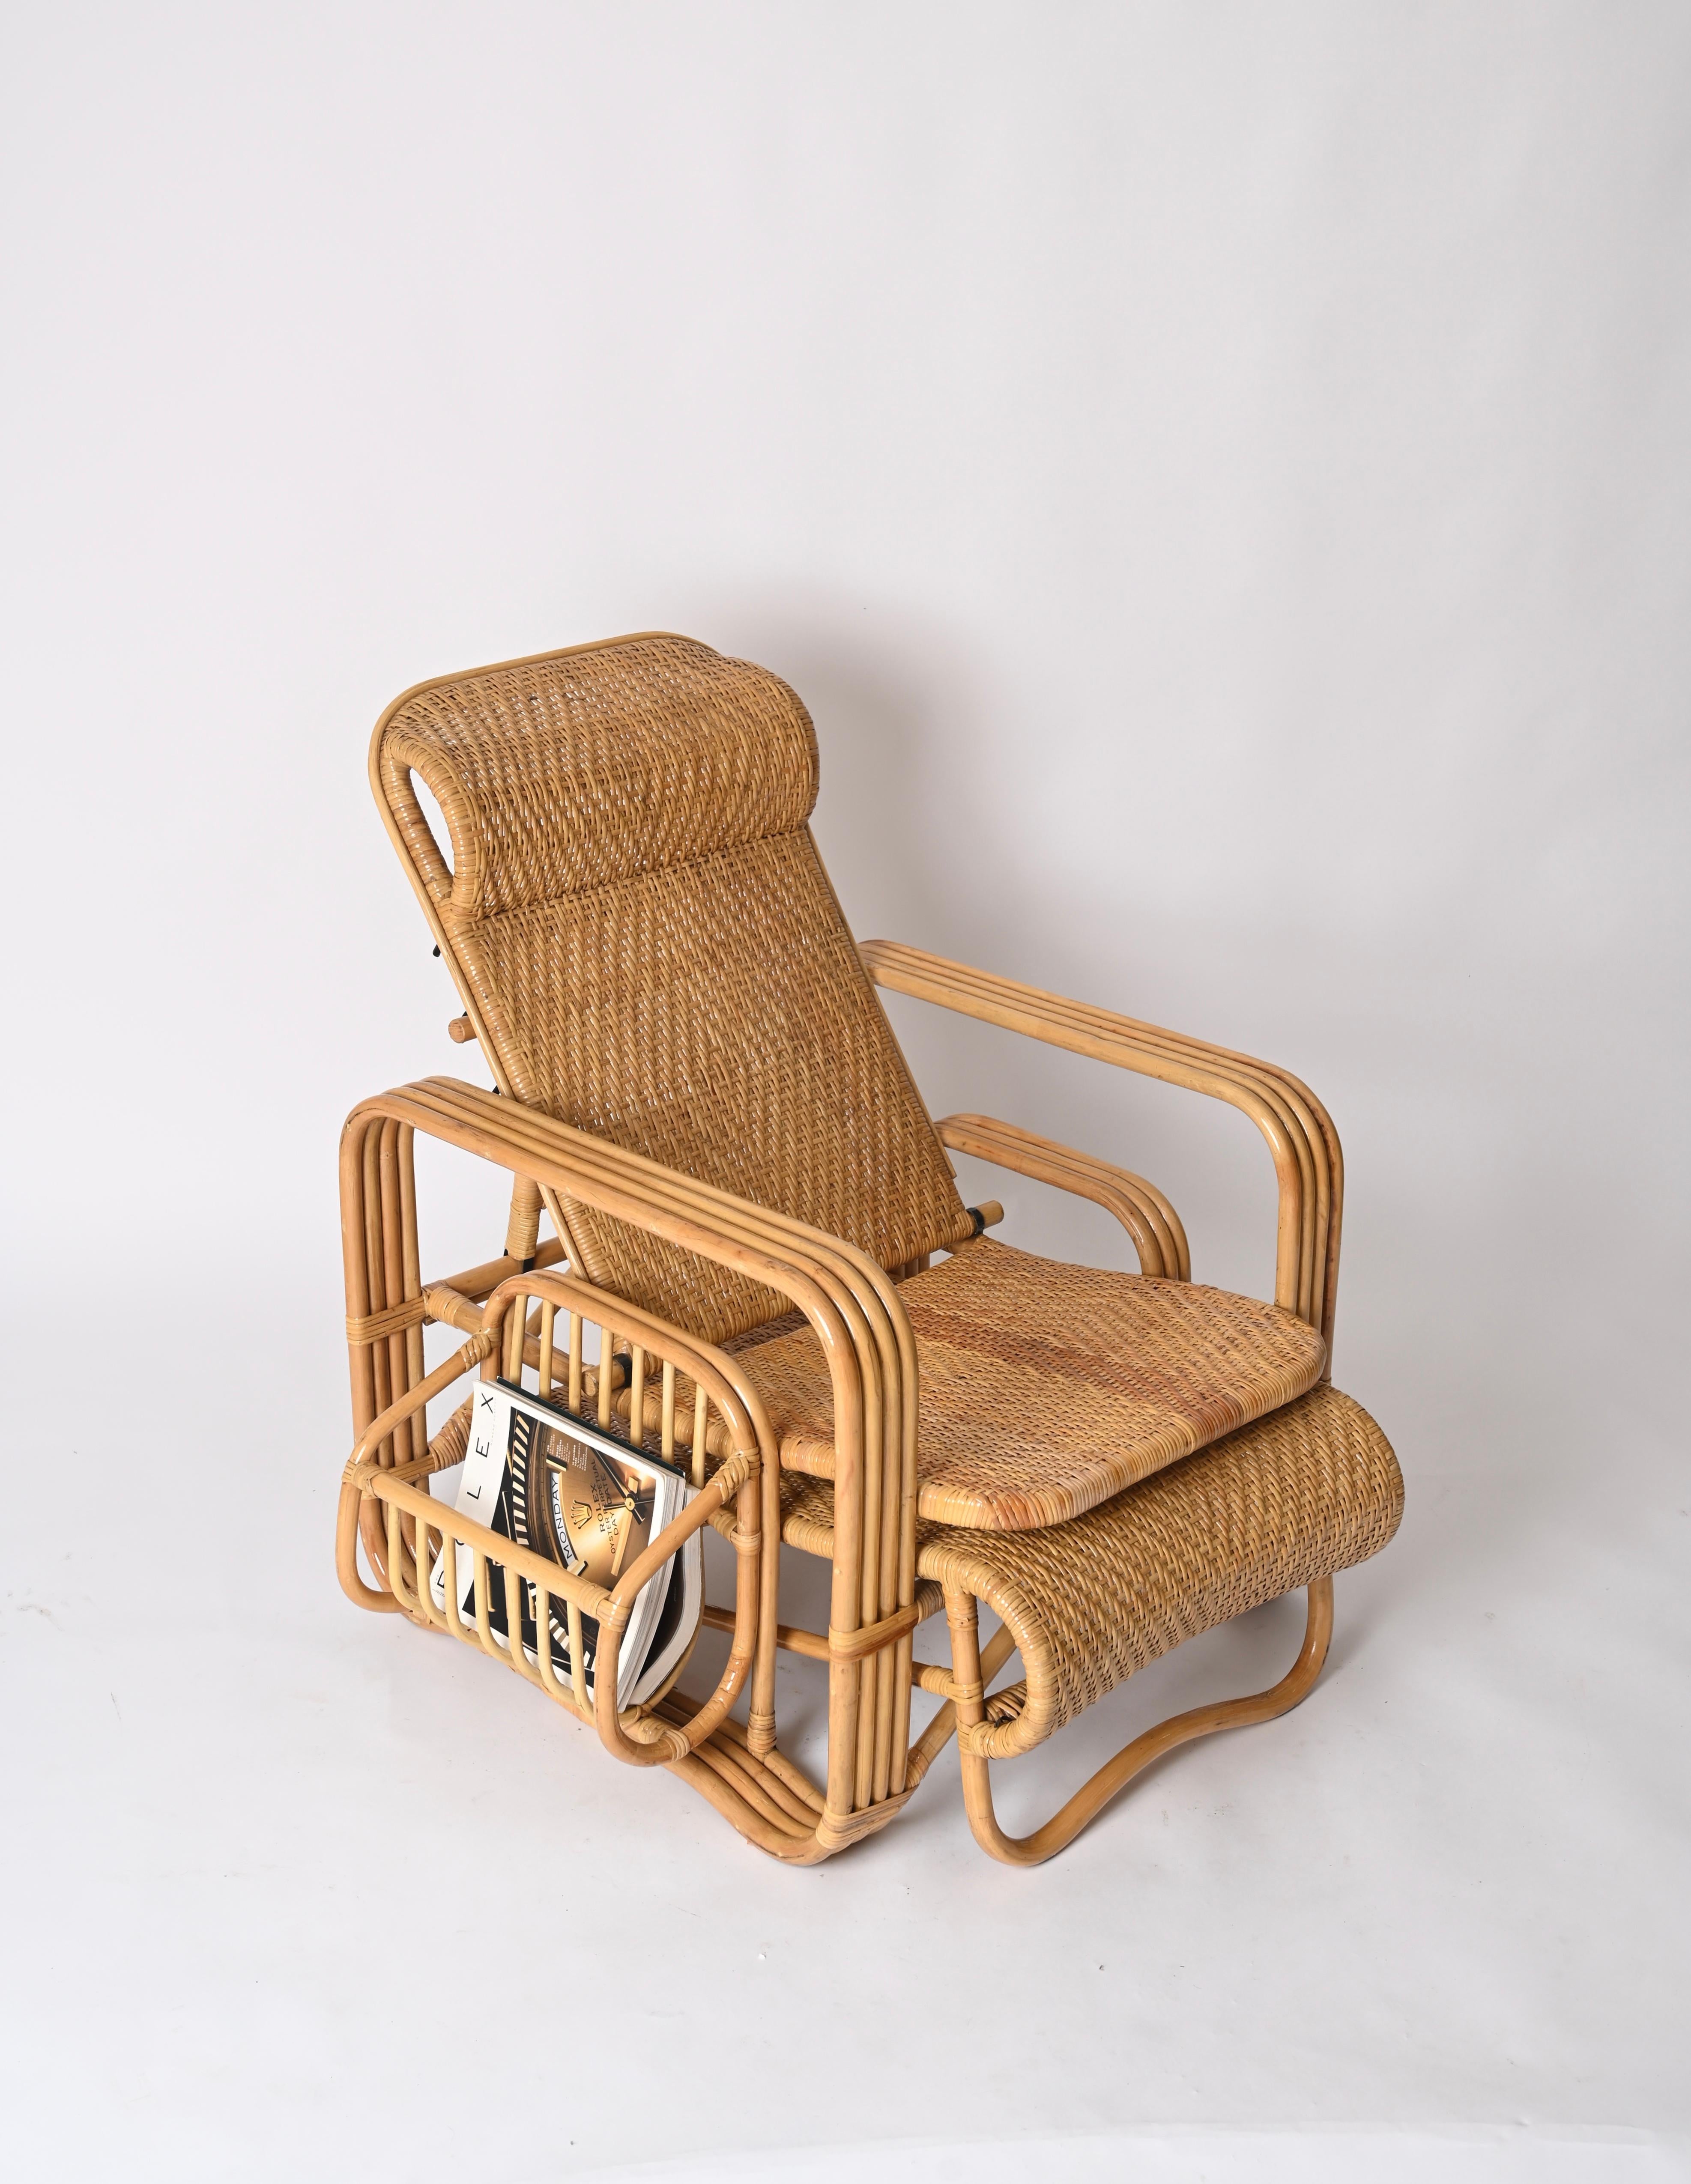 Spectaculaire fauteuil / chaise longue inclinable entièrement fabriqué en bambou courbé, en rotin et en osier tressé à la main.  Ces magnifiques chaises longues ont été produites en Italie dans les années 1970 et sont attribuées à la maîtrise de